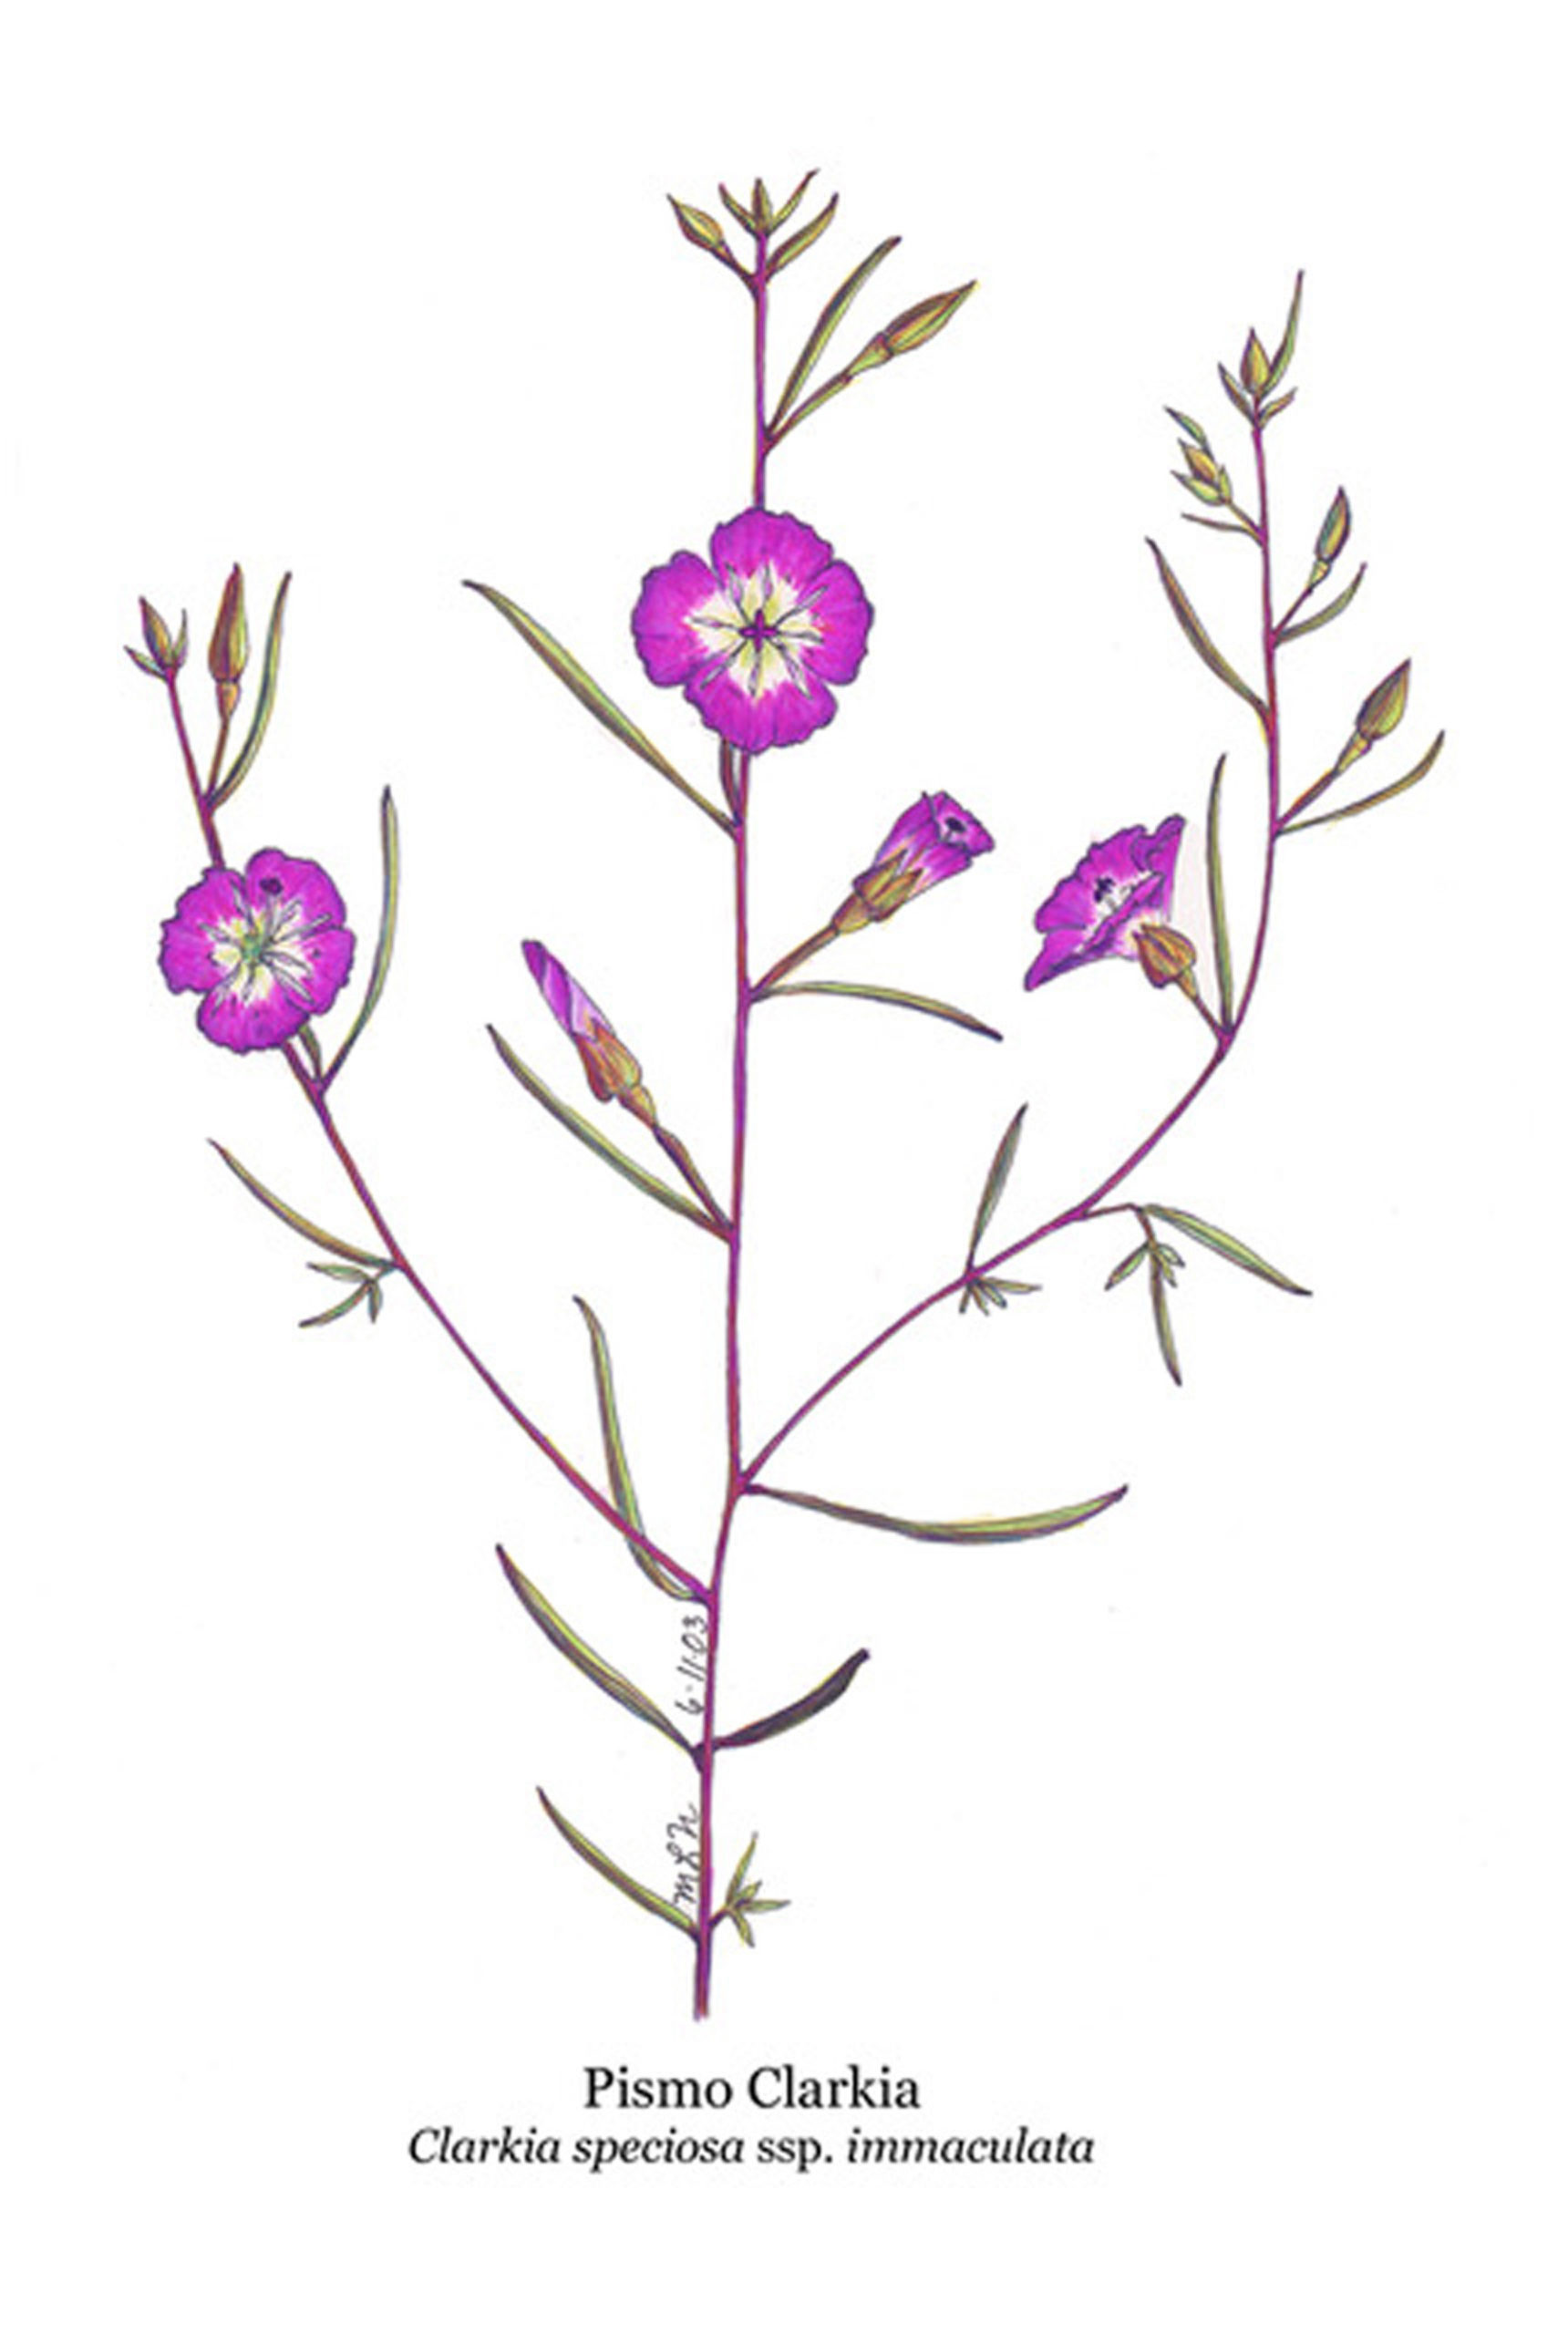 Clarkia speciosa subsp. immaculata (Pismo Clarkia)